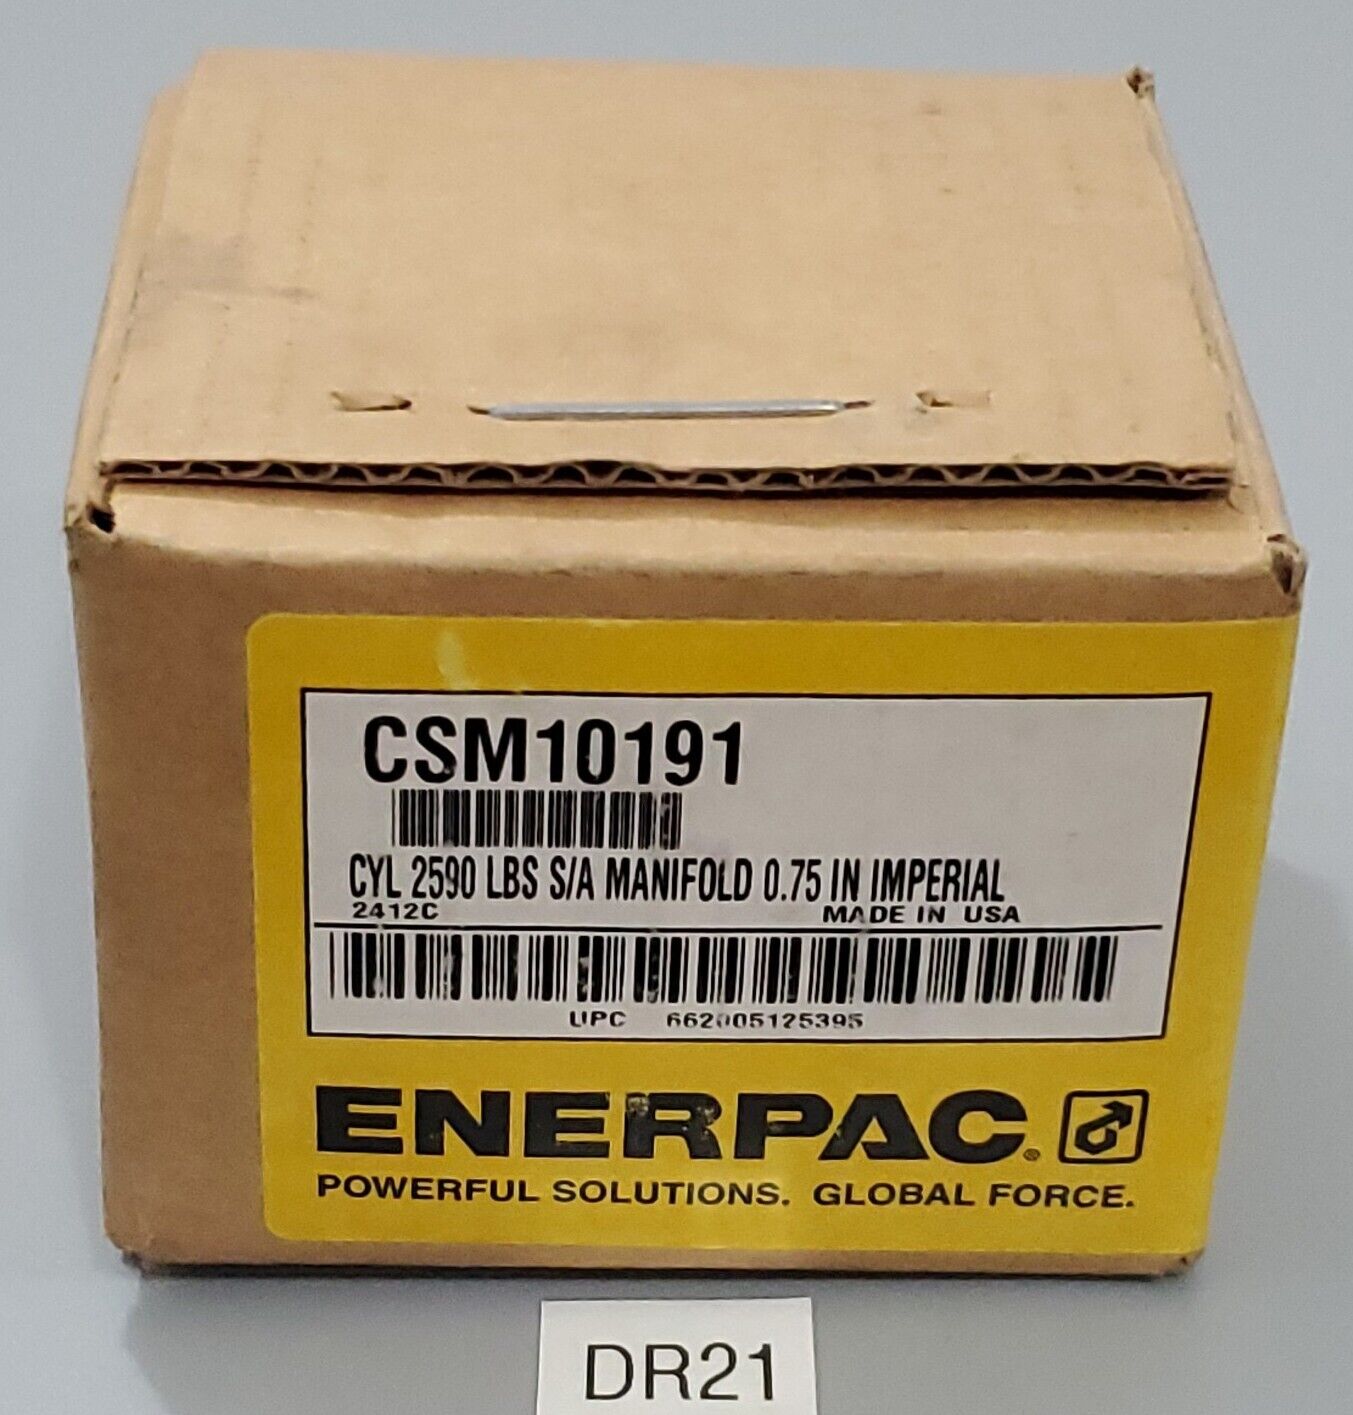 *NEW FACTORY SEALED* Enerpac CSM10191 Manifold Hydraulic Cylinder + Warranty